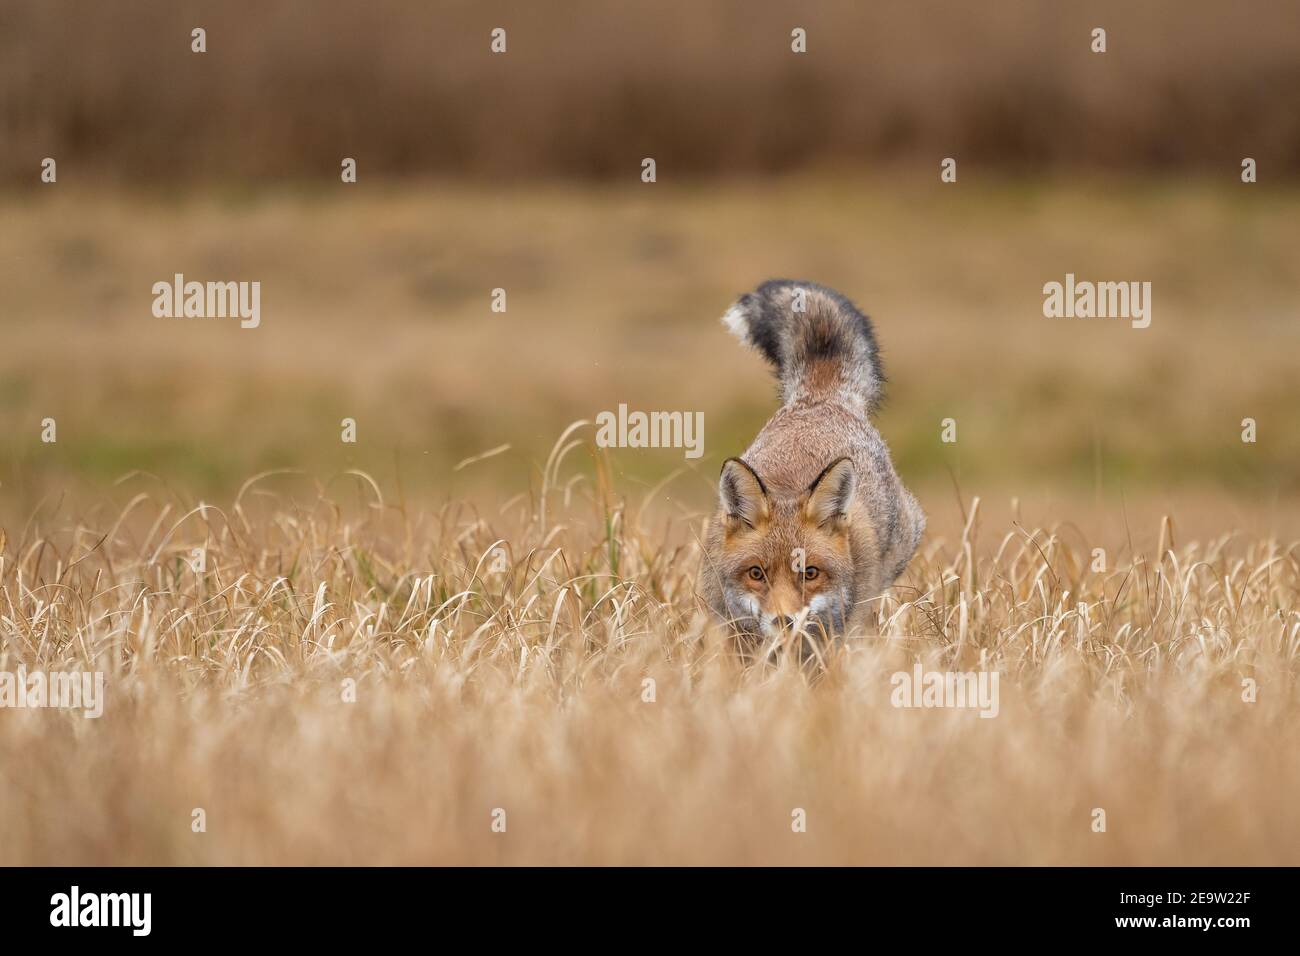 Roter Fuchs versteckt im gelben Feld. Tierjäger in Aktion aus der Vorderansicht Stockfoto